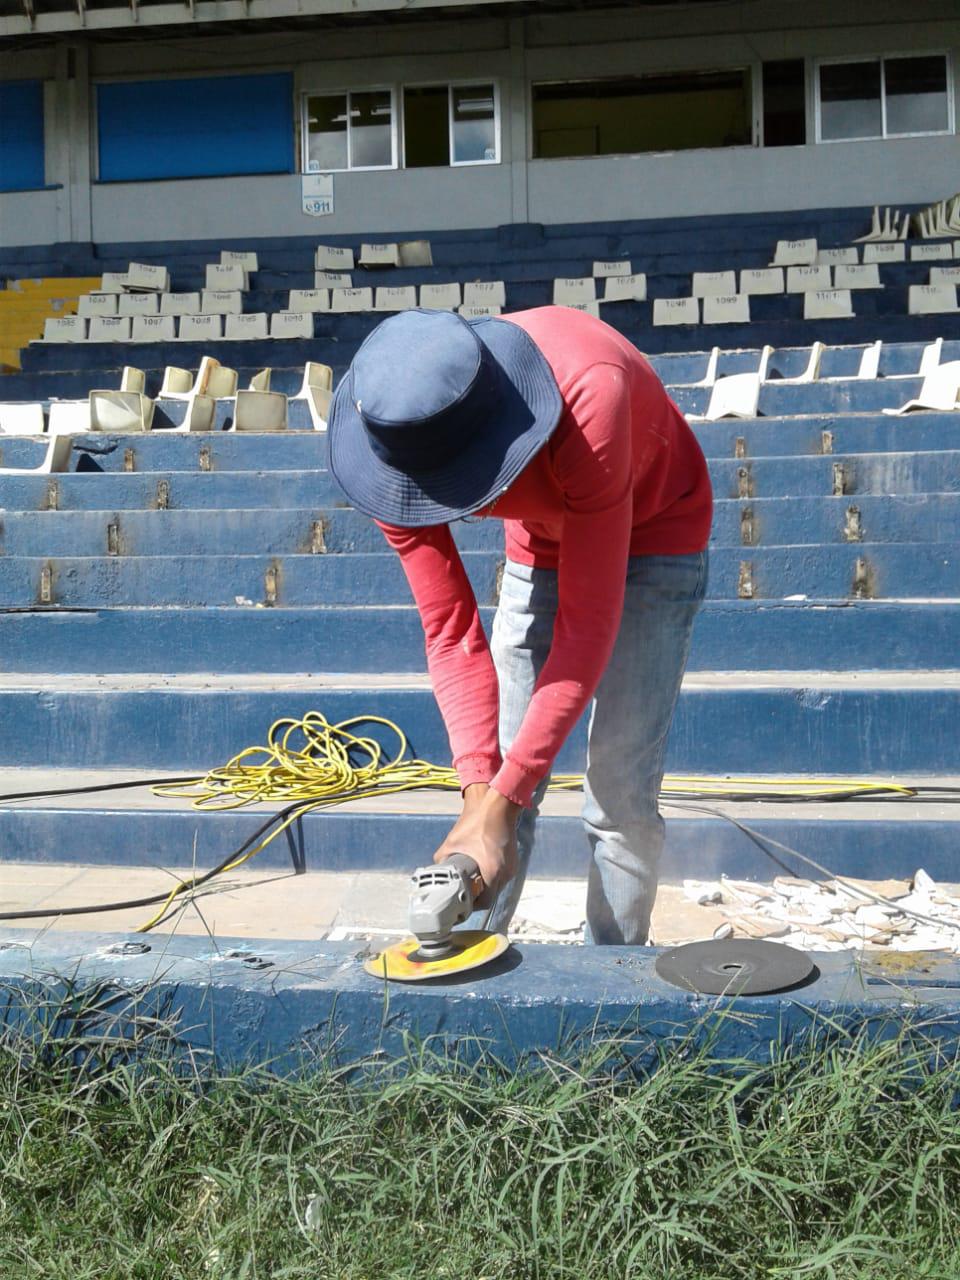 Maquillado y sin sillas: Así luce el estadio Nacional de Tegucigalpa previo a la toma de posesión de Xiomara Castro